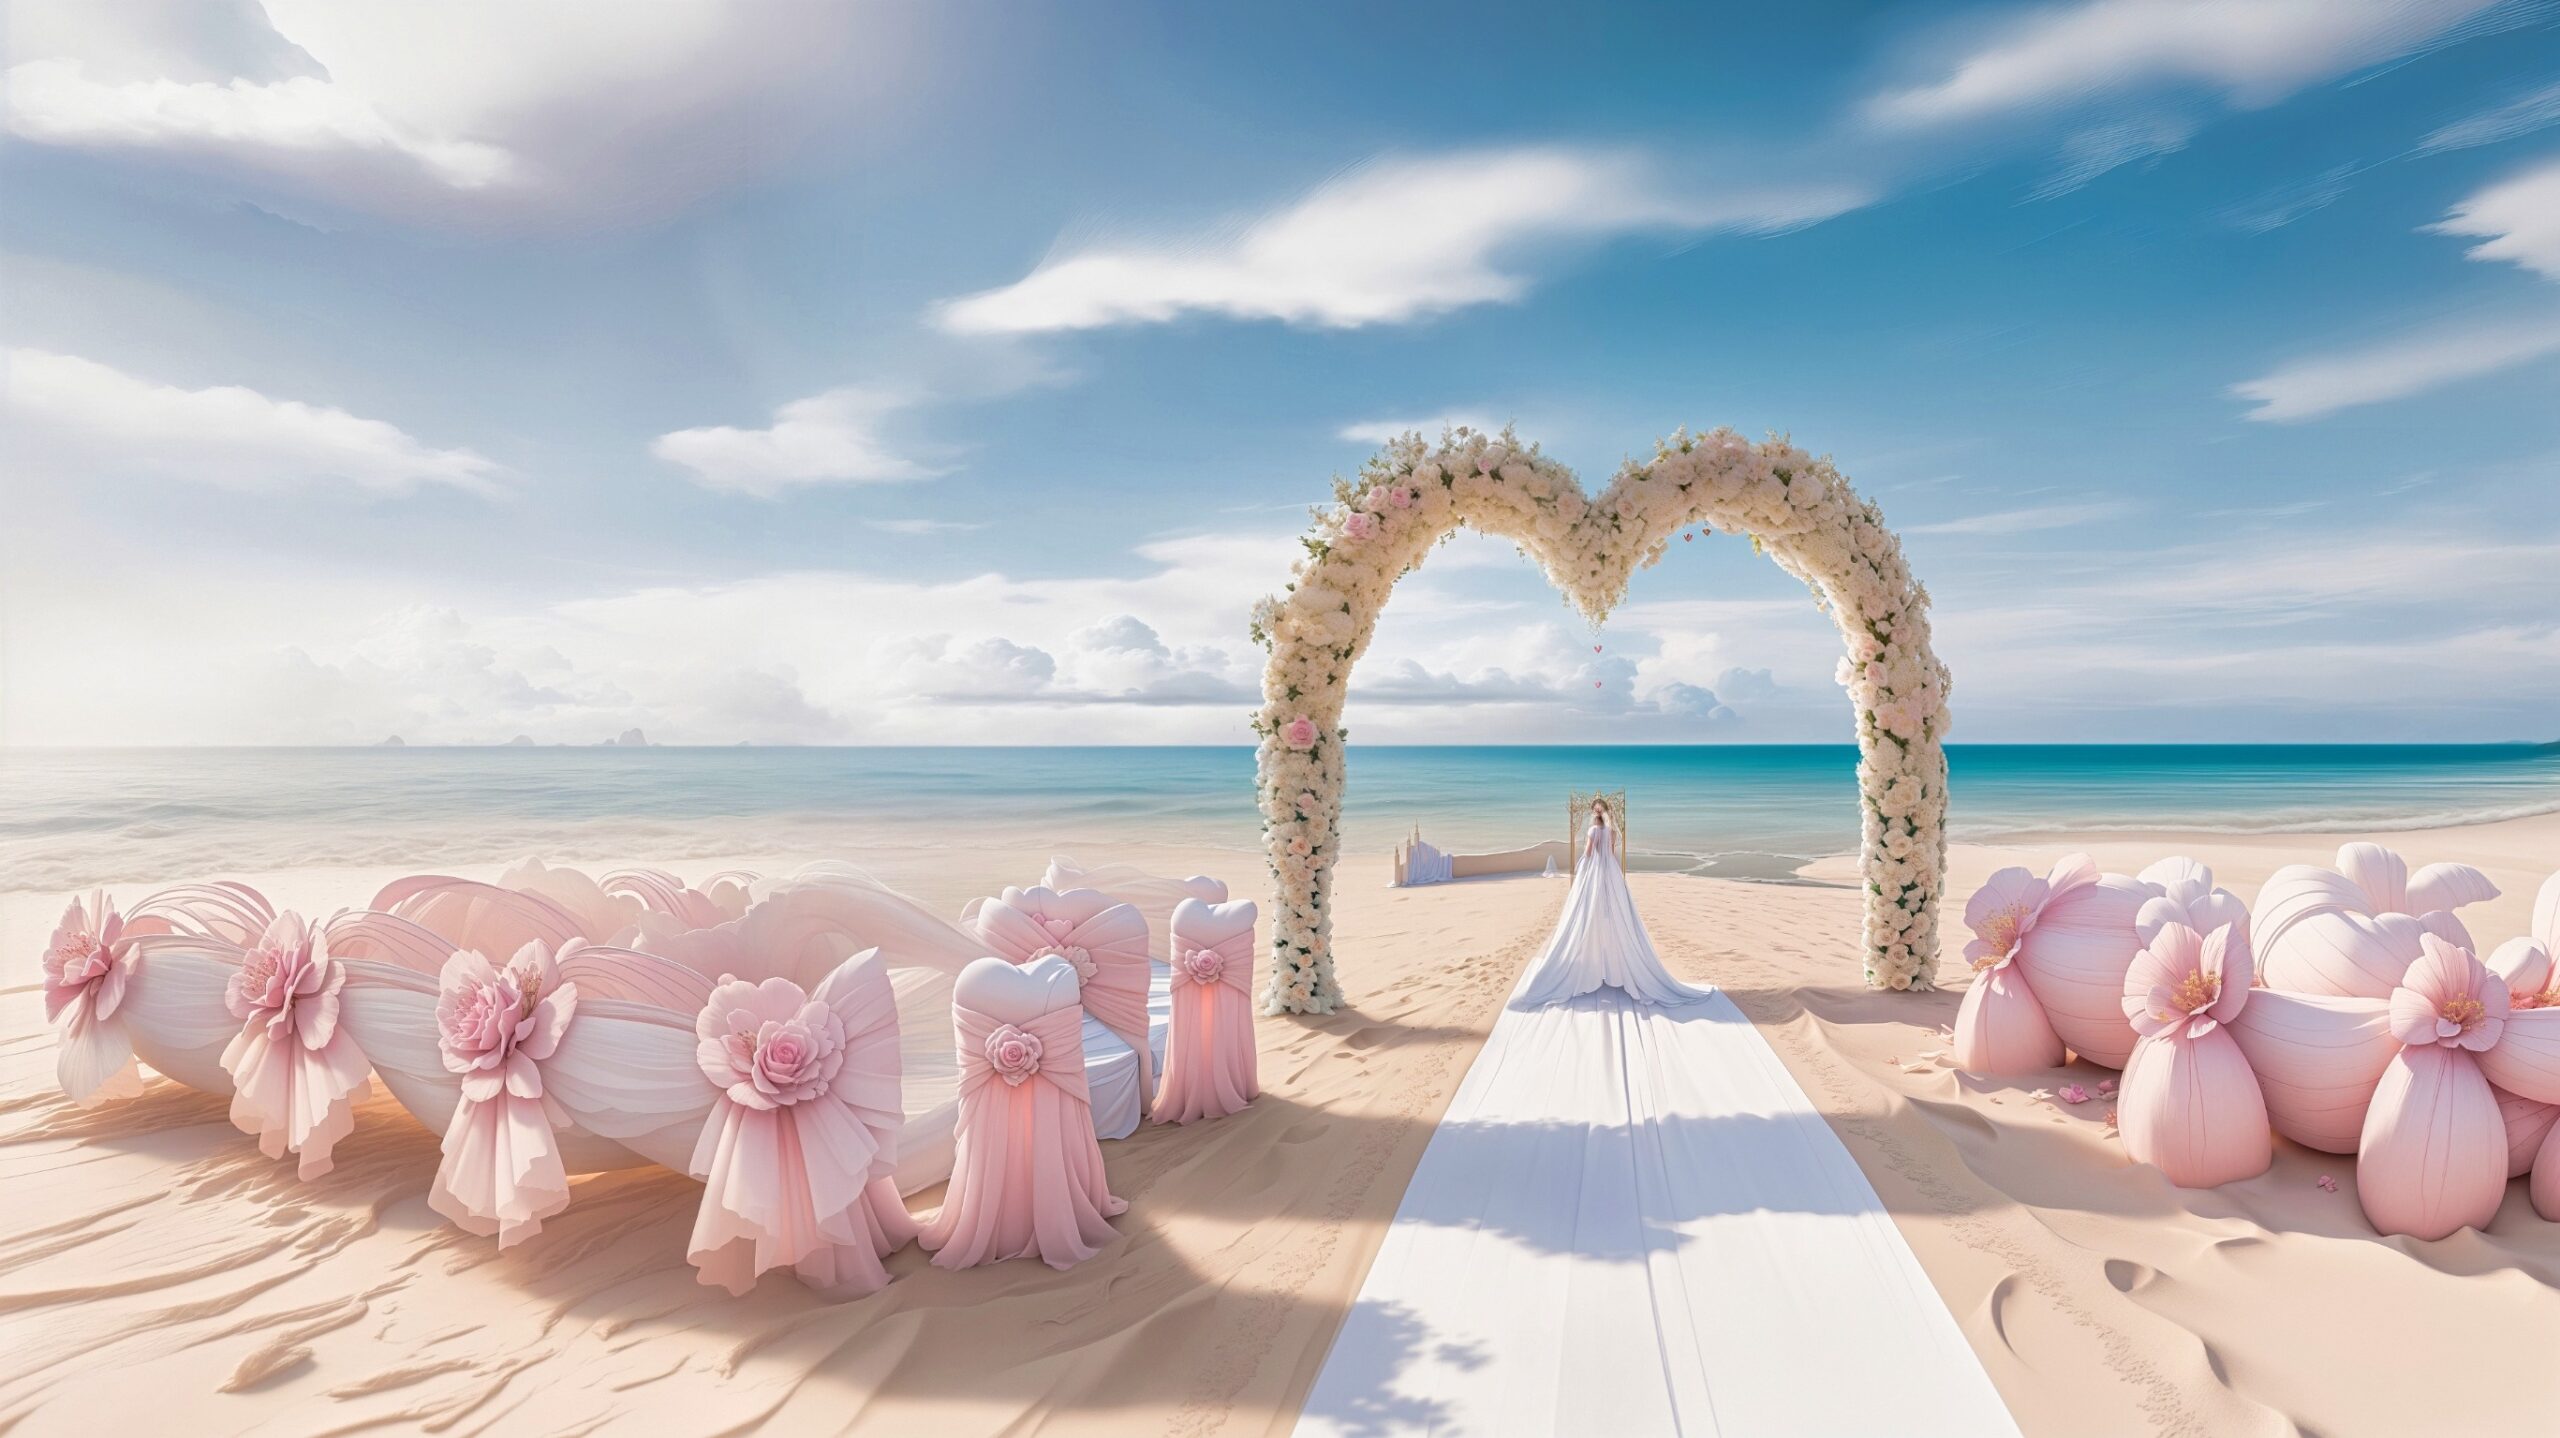 wedding arches